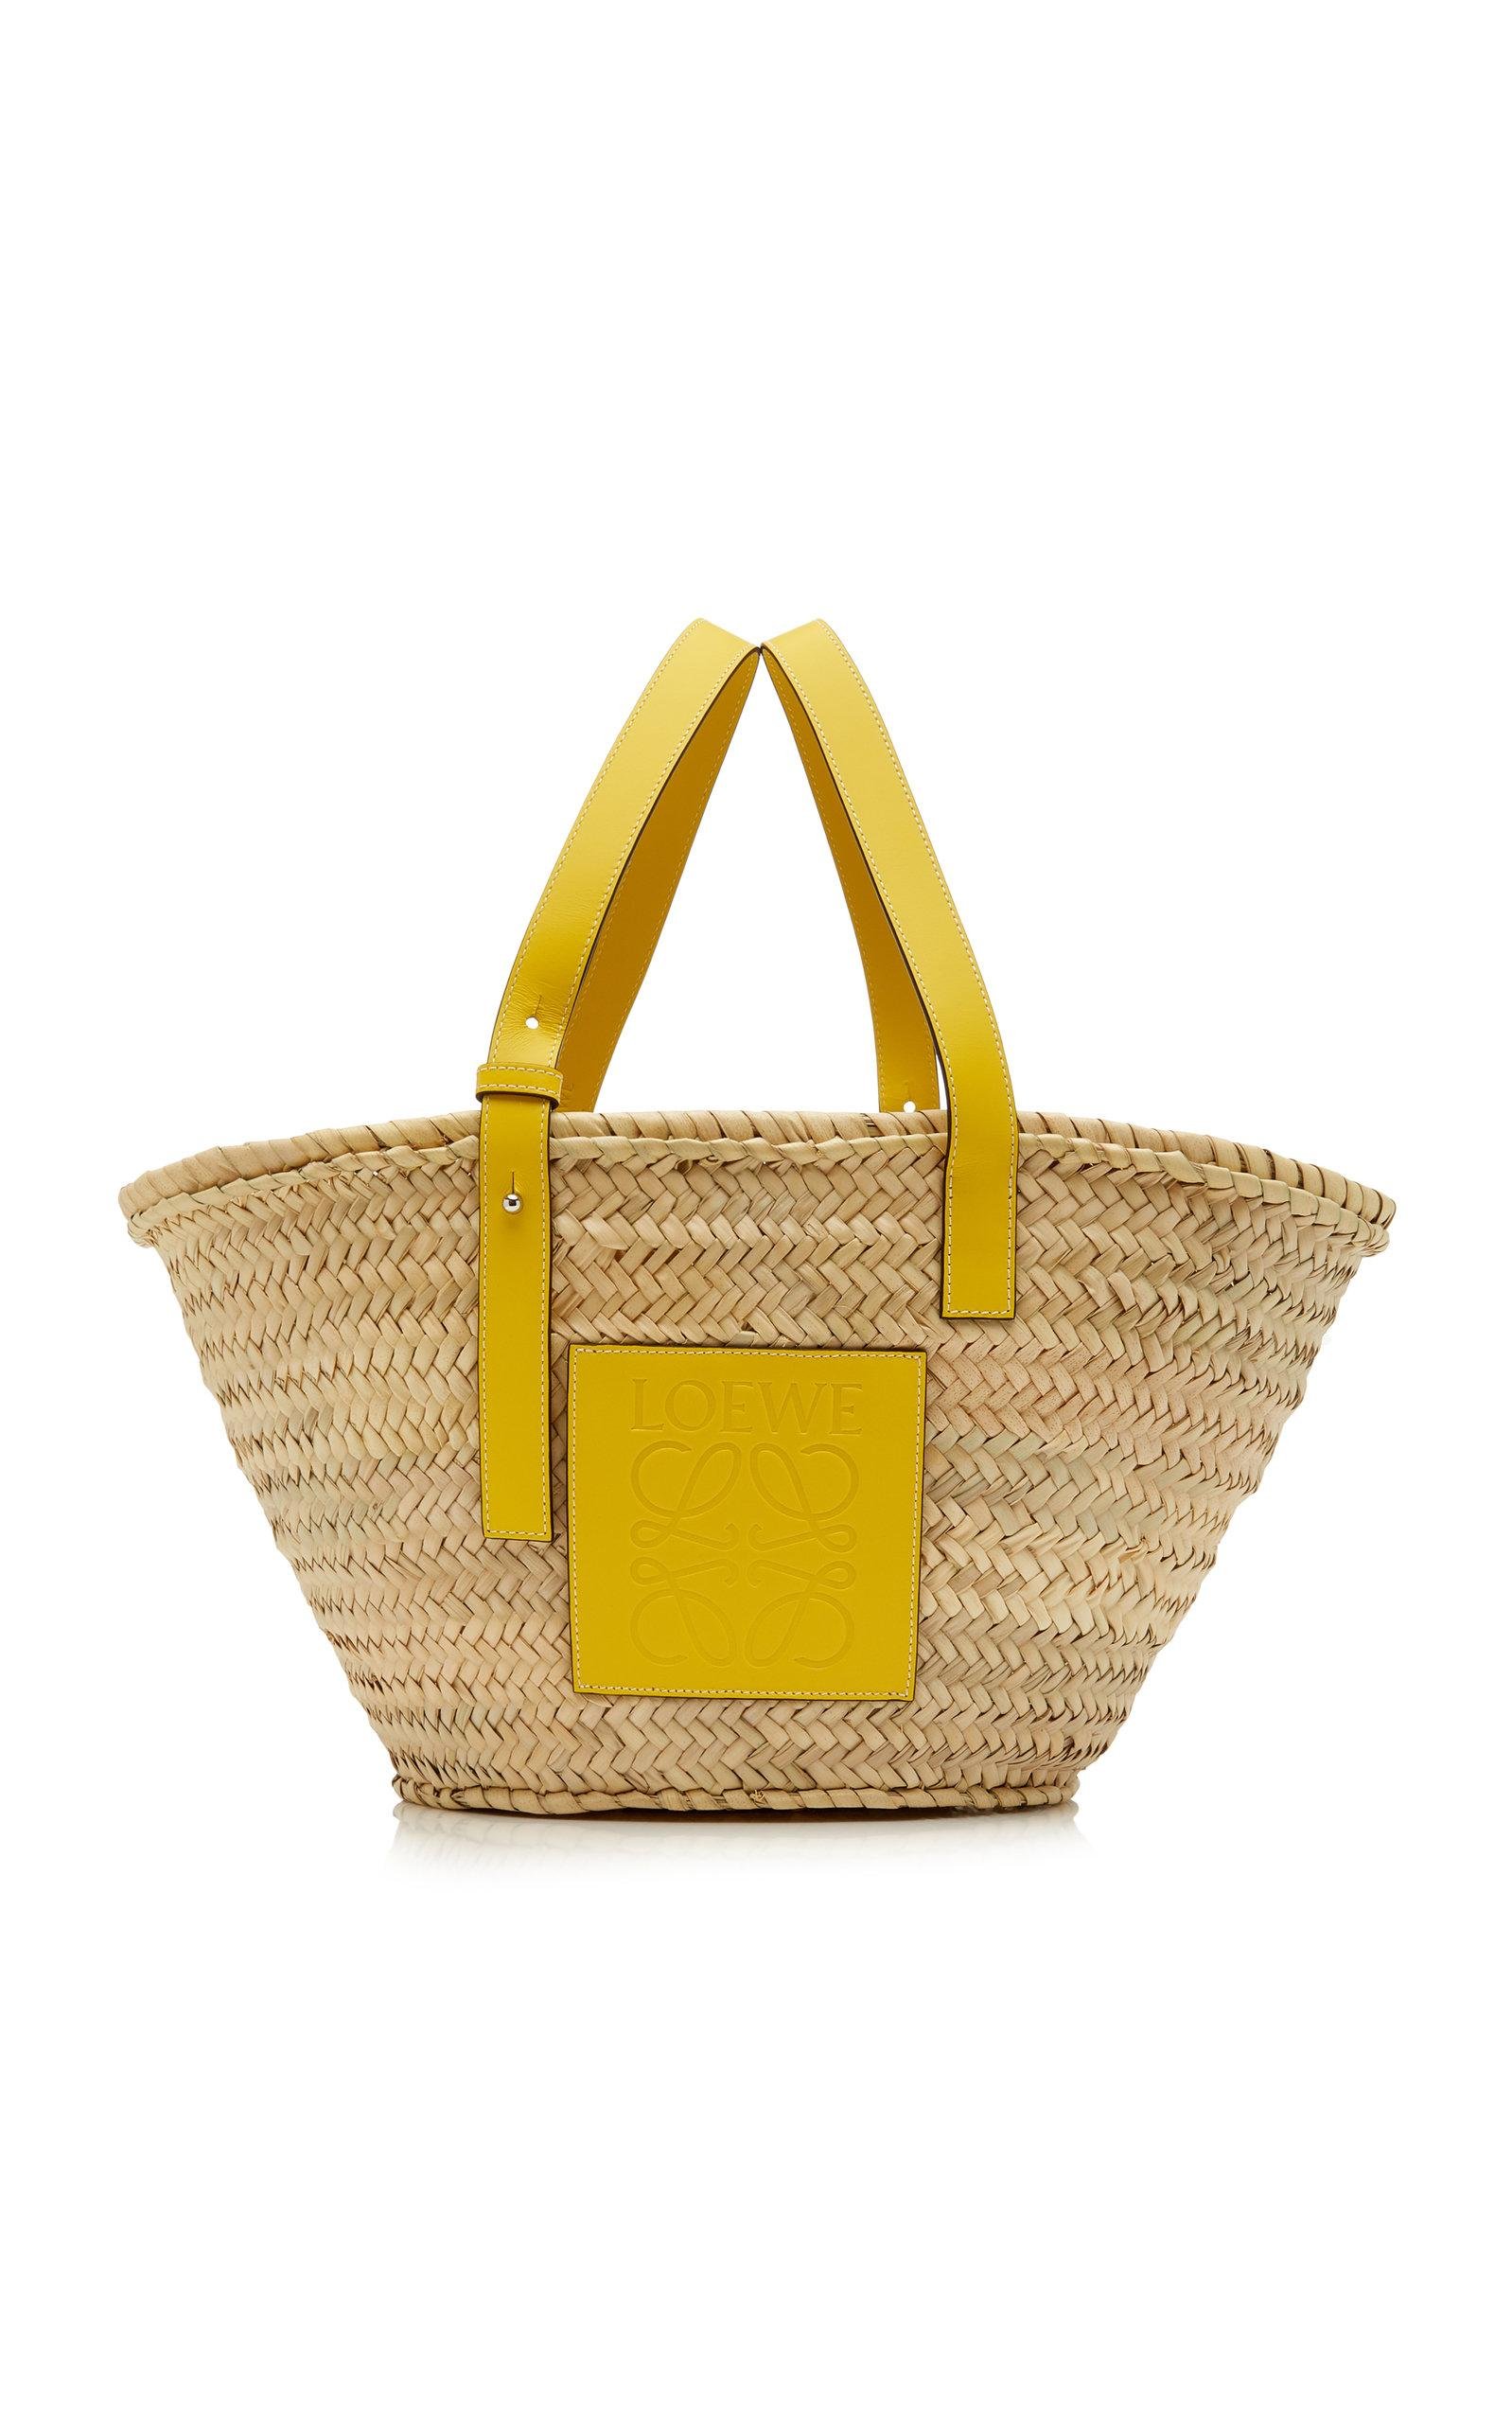 LOEWE Raffia Small Basket Tote Bag Natural Tan Navy 1291141